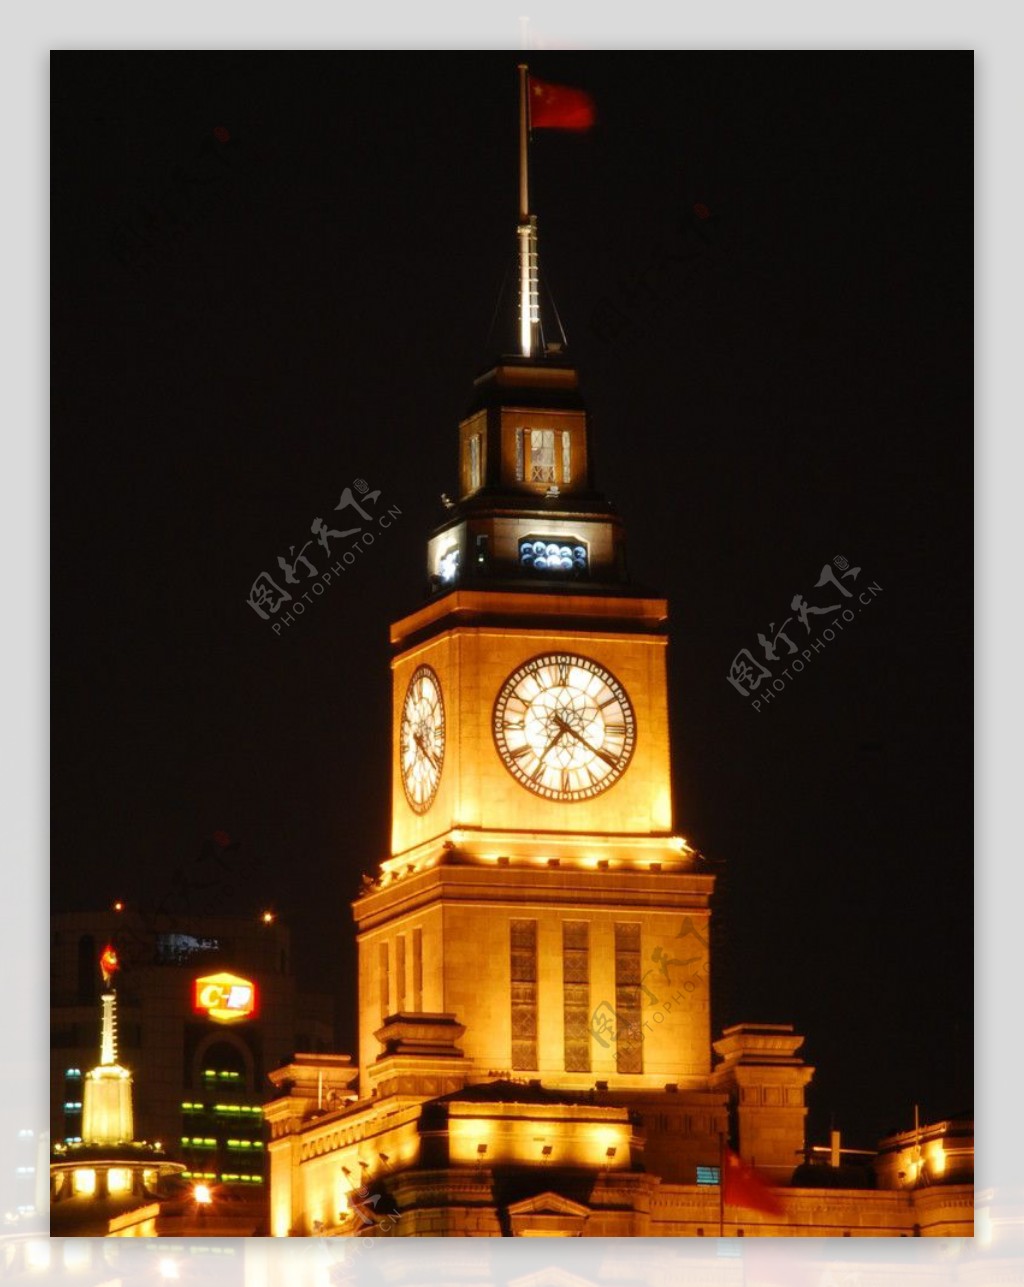 黄埔江边的钟楼夜色图片